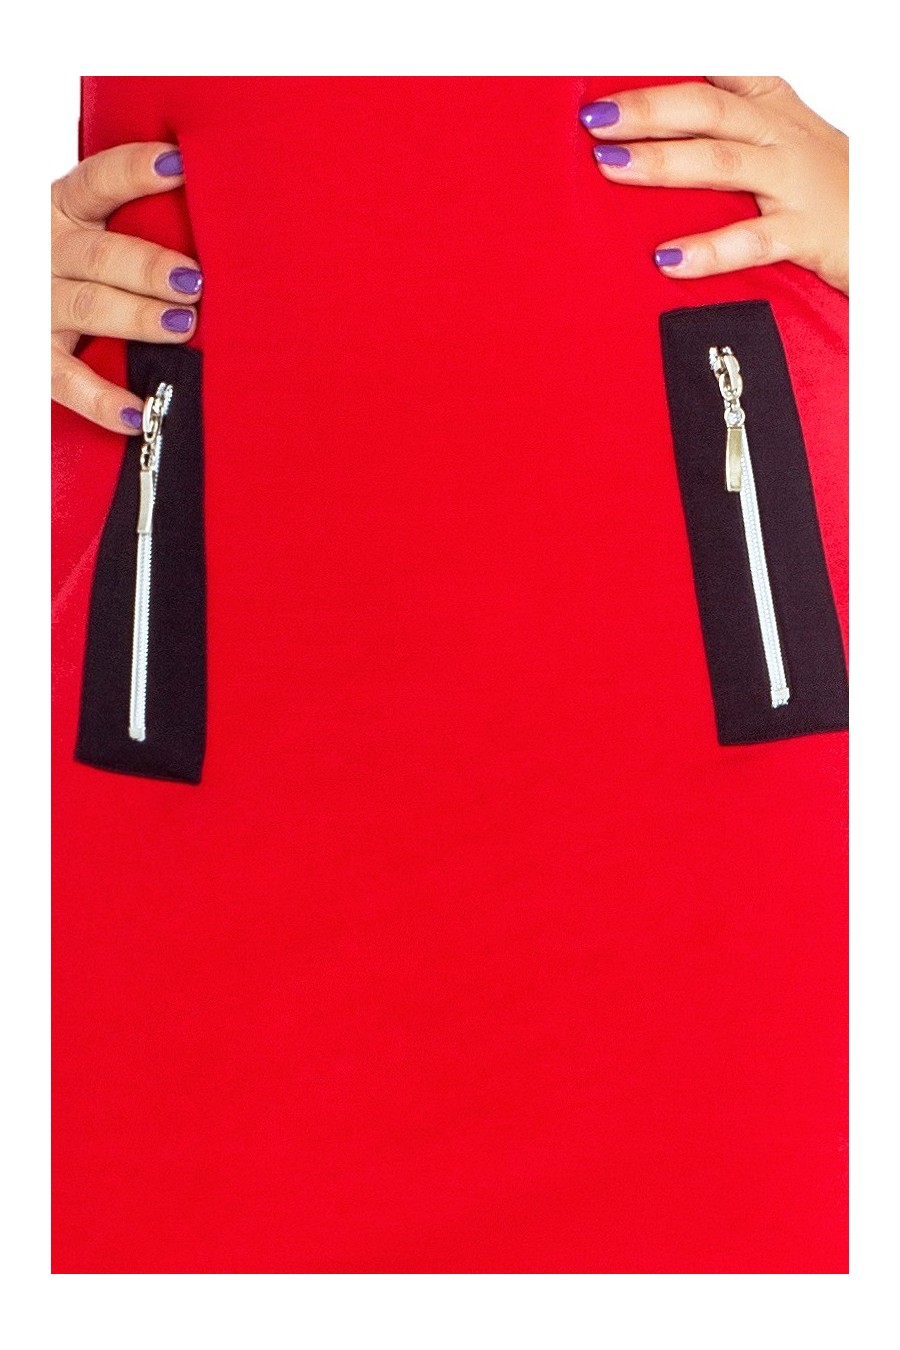 129-3 Justyna šaty se třemi zámky - červená + černé zámky